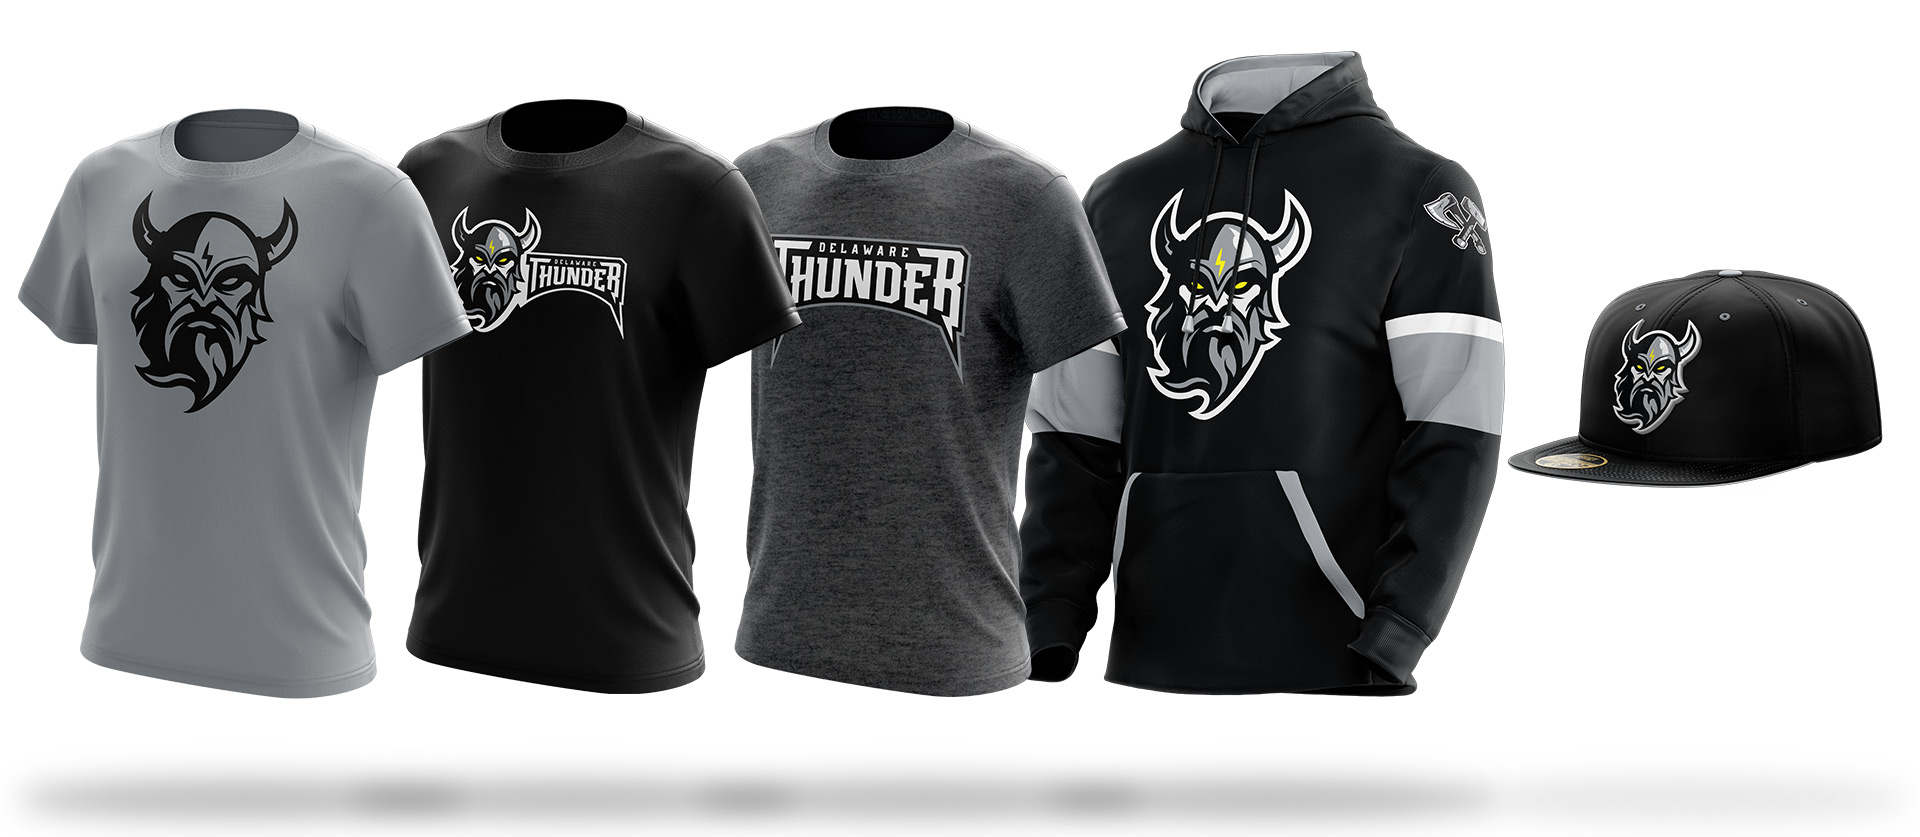 sports merchandising design for Delaware Thunder